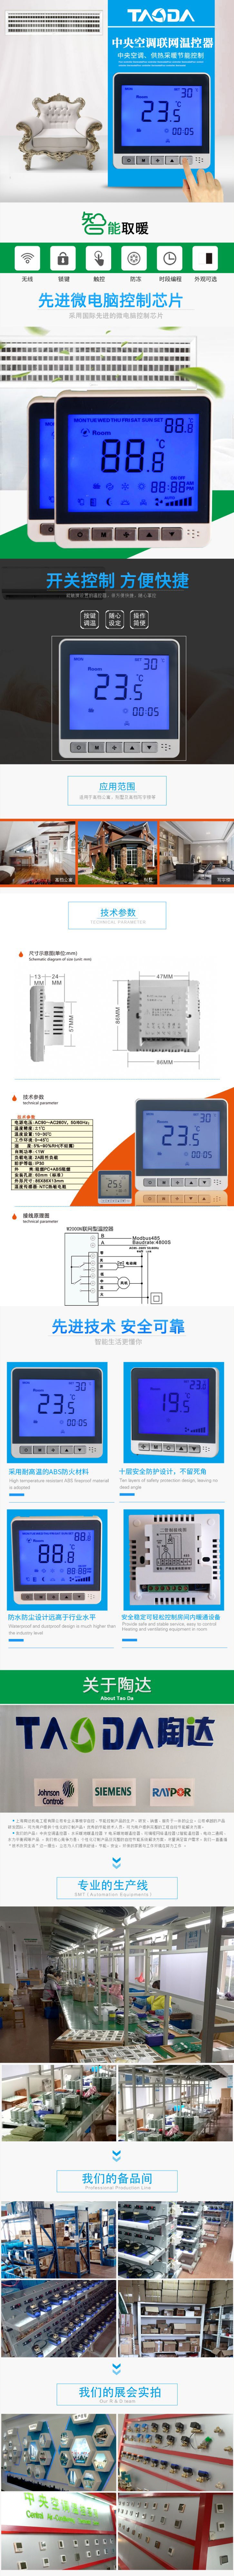 联网计费温控器 网络温控器 485温控器 集中网络控制器 上海陶达示例图1